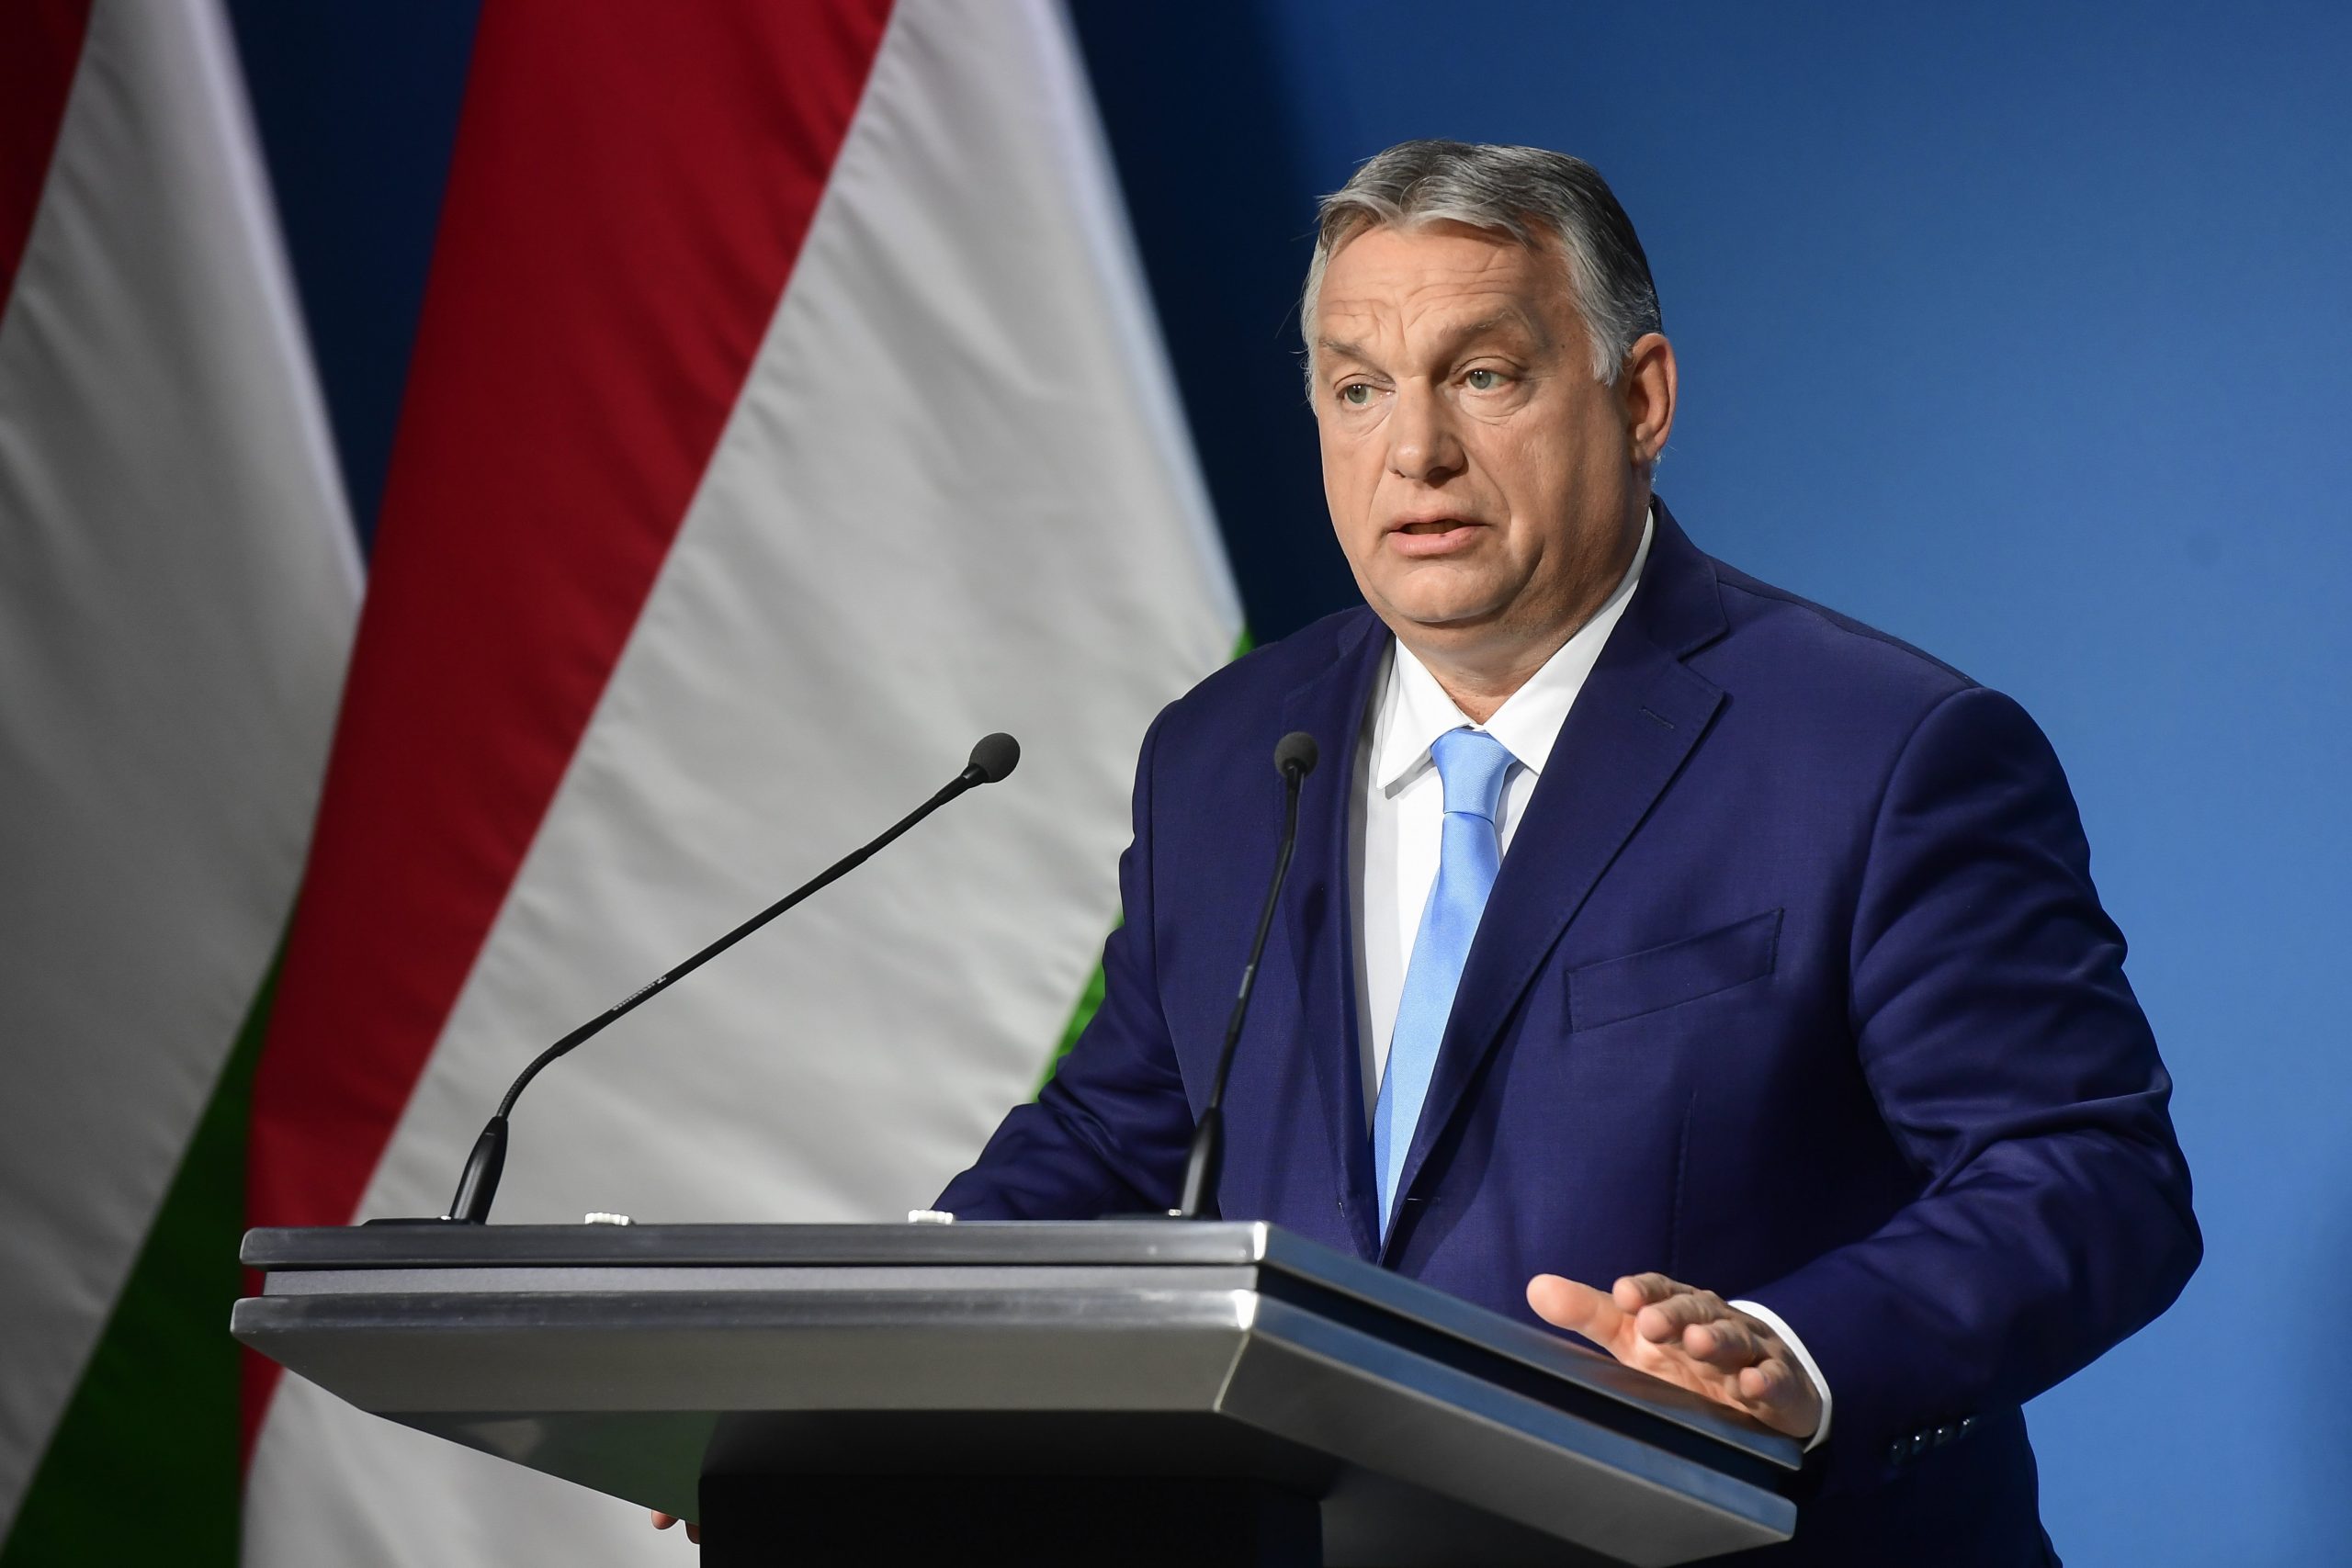 Ούγγρος ηγέτης Β.Ορμπάν: «Μέχρι το 2030 όλα τα έθνη θα υποφέρουν χειρότερα κι απ’όσο υπέφεραν στην πανδημία»!